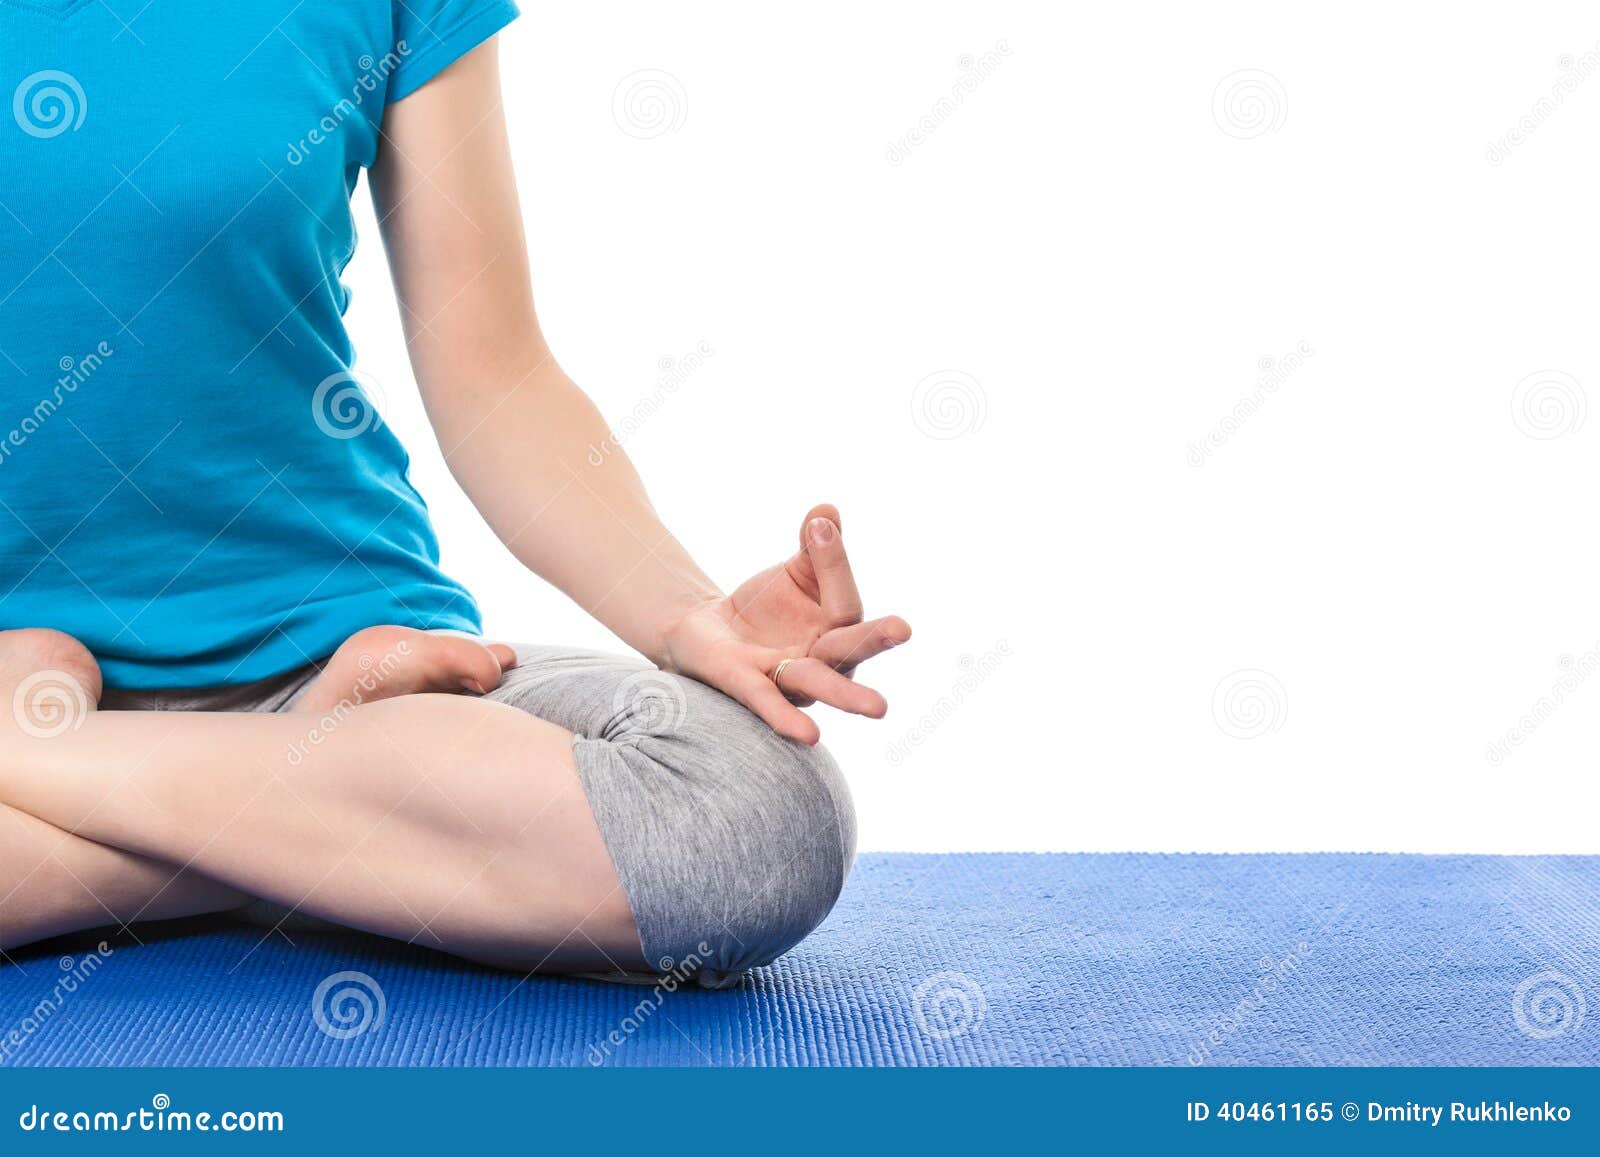 chin mudra yoga mat